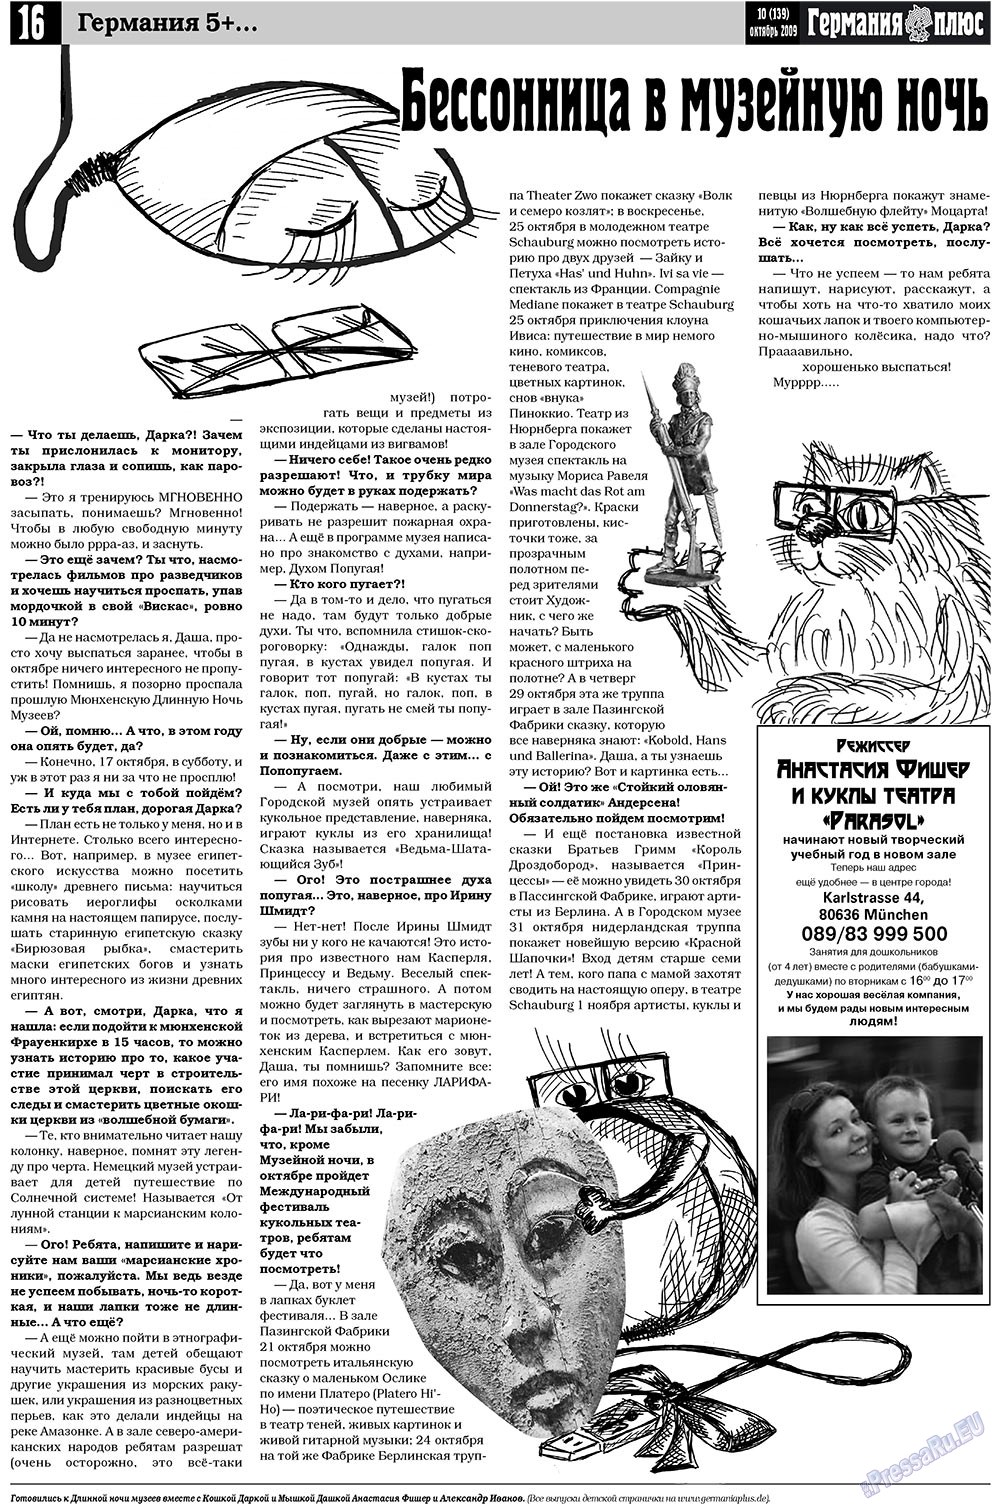 Германия плюс, газета. 2009 №10 стр.16